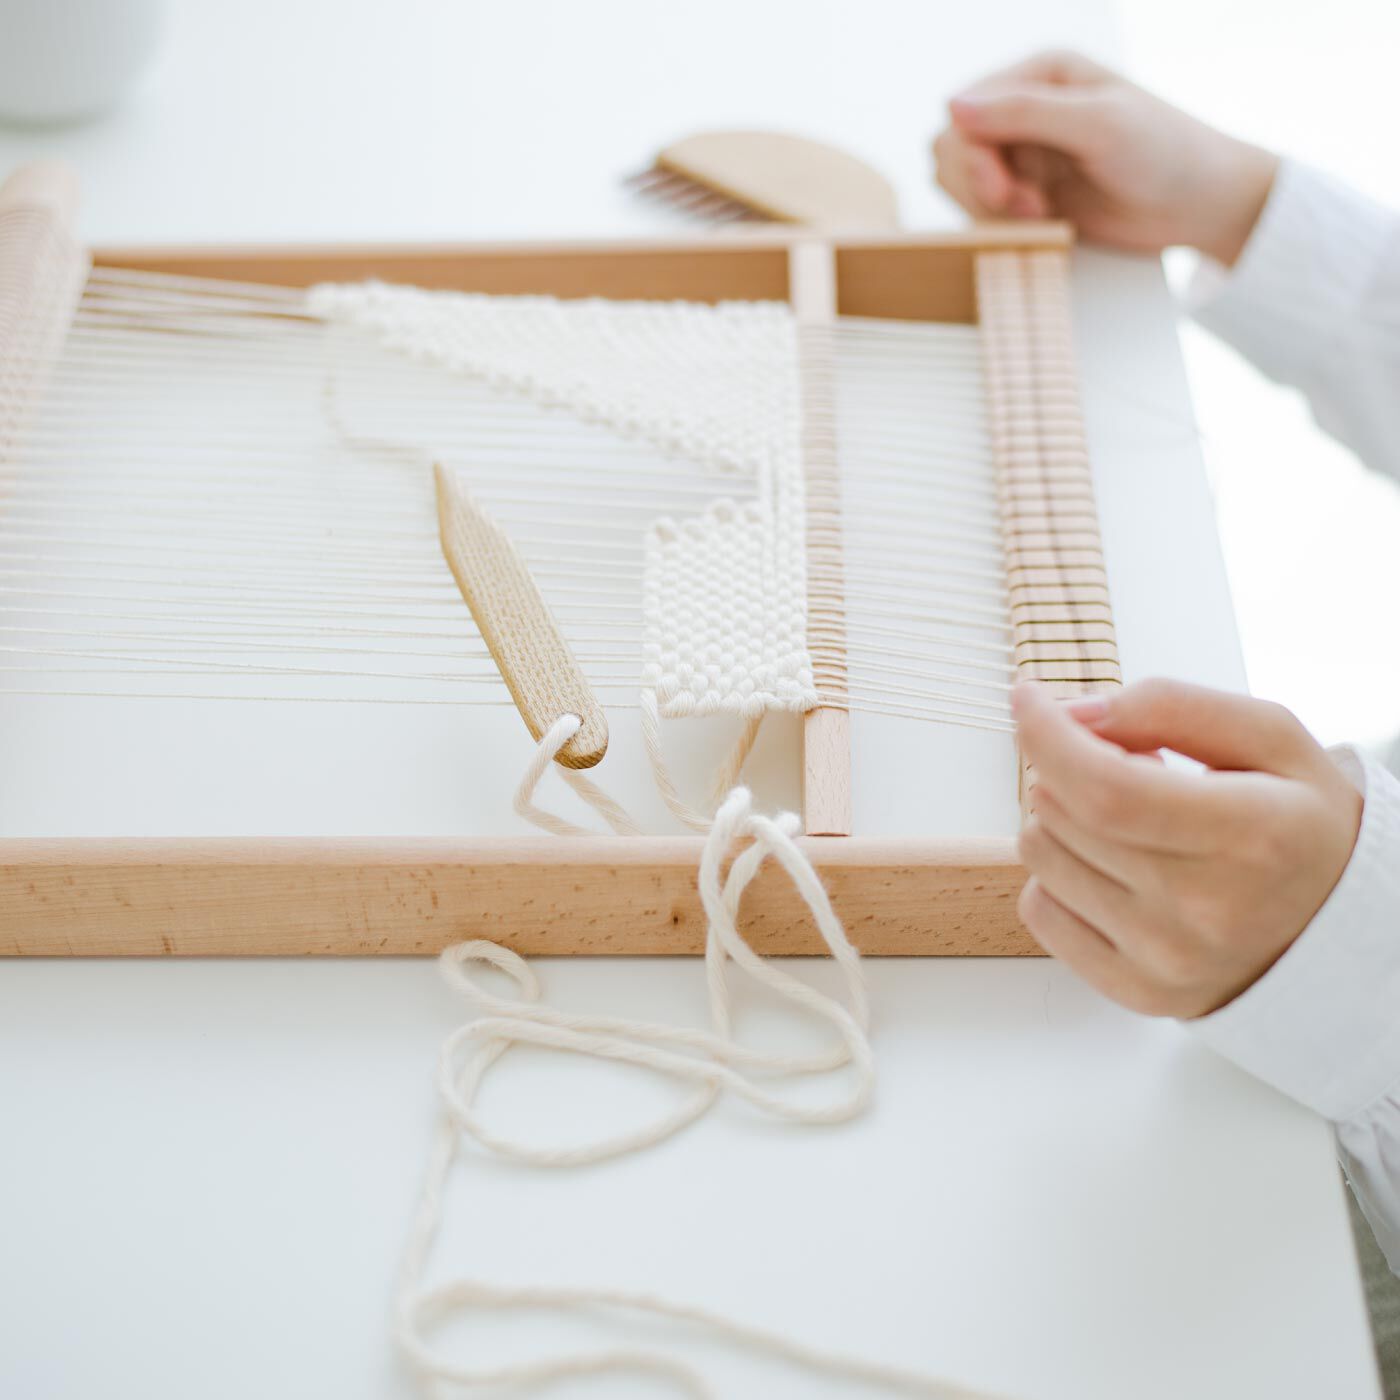 SeeMONO|置いてるだけでインテリアになる ドイツの木製織り機＆ひも用はさみのセット|新しい趣味はじめにぴったりの織り機です。